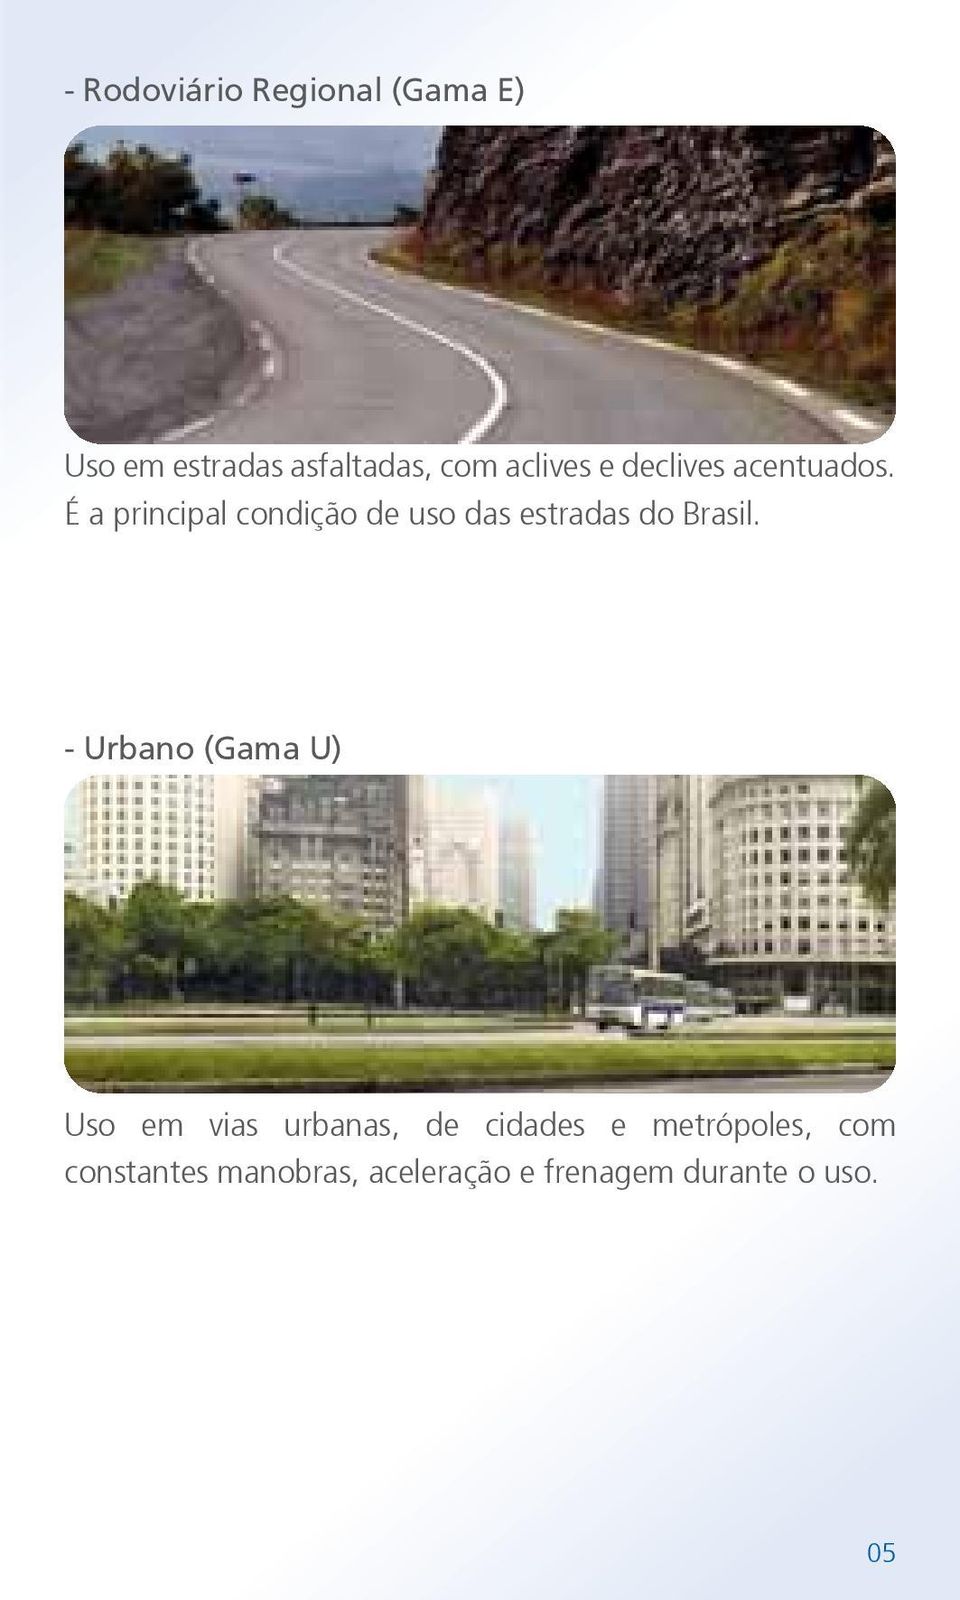 É a principal condição de uso das estradas do Brasil.